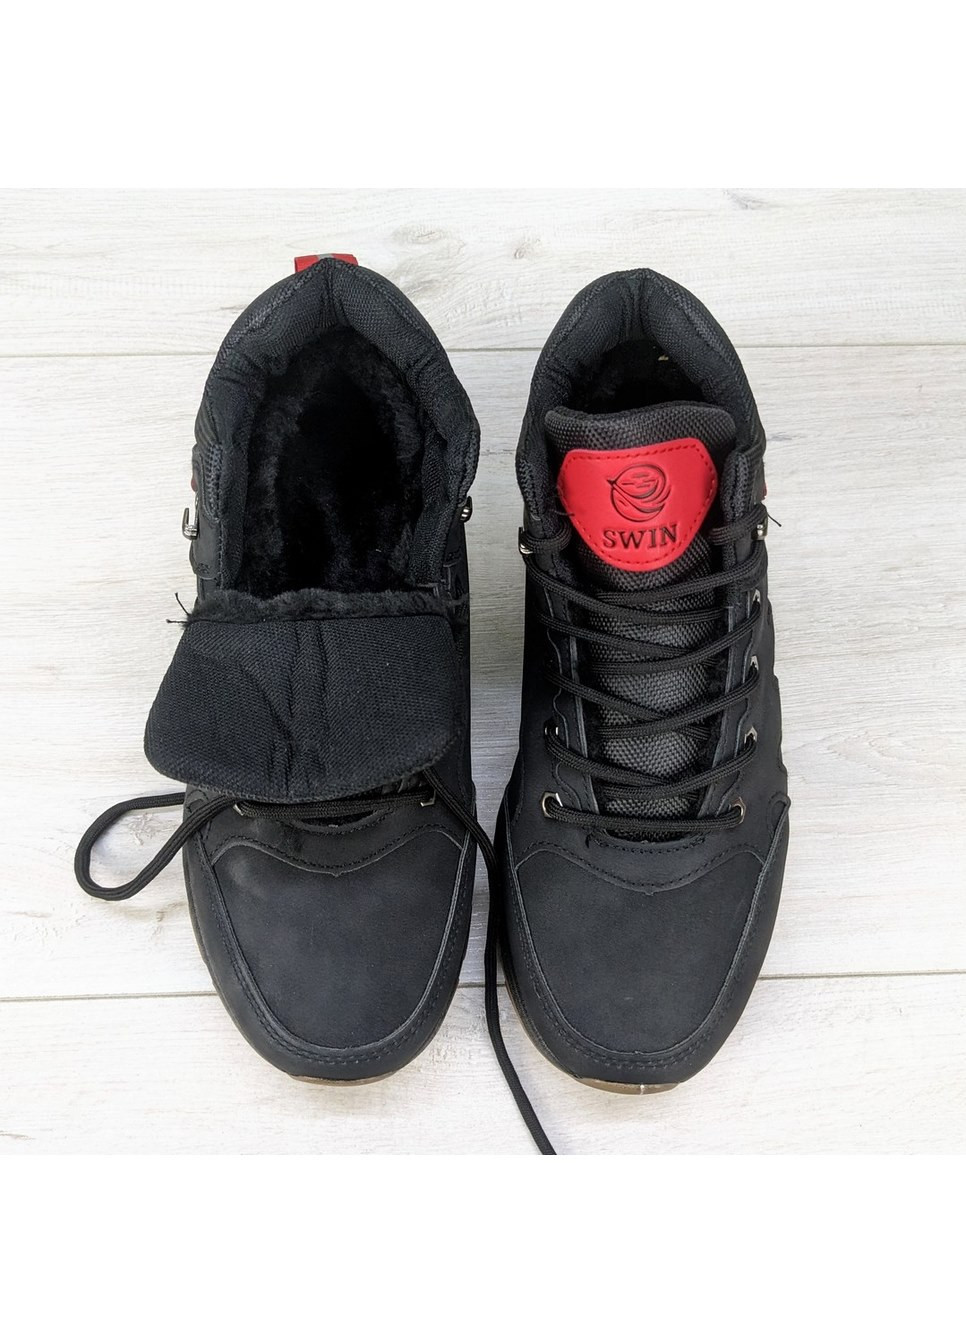 Черные осенние ботинки мужские зимние Dual